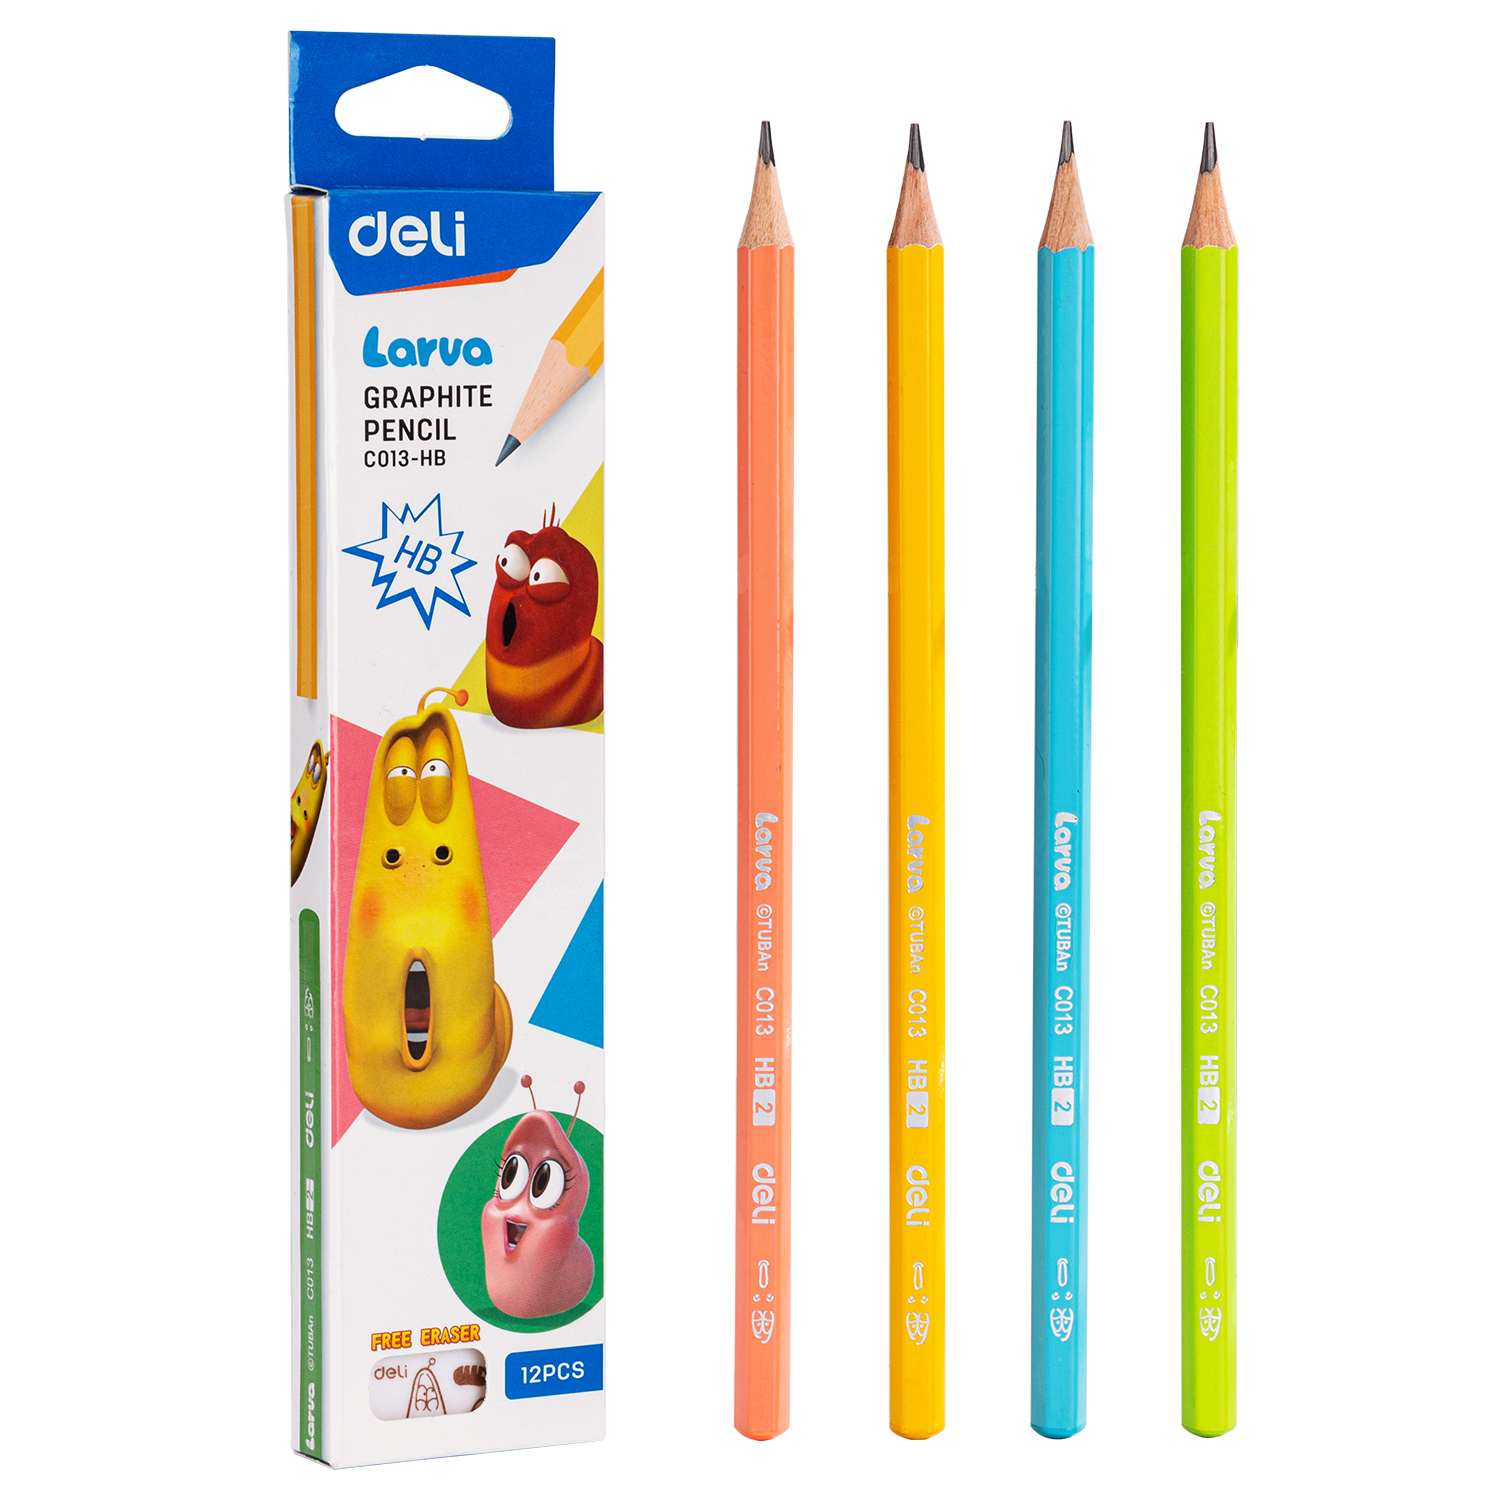 Deli-EC013-HB Graphite Pencil